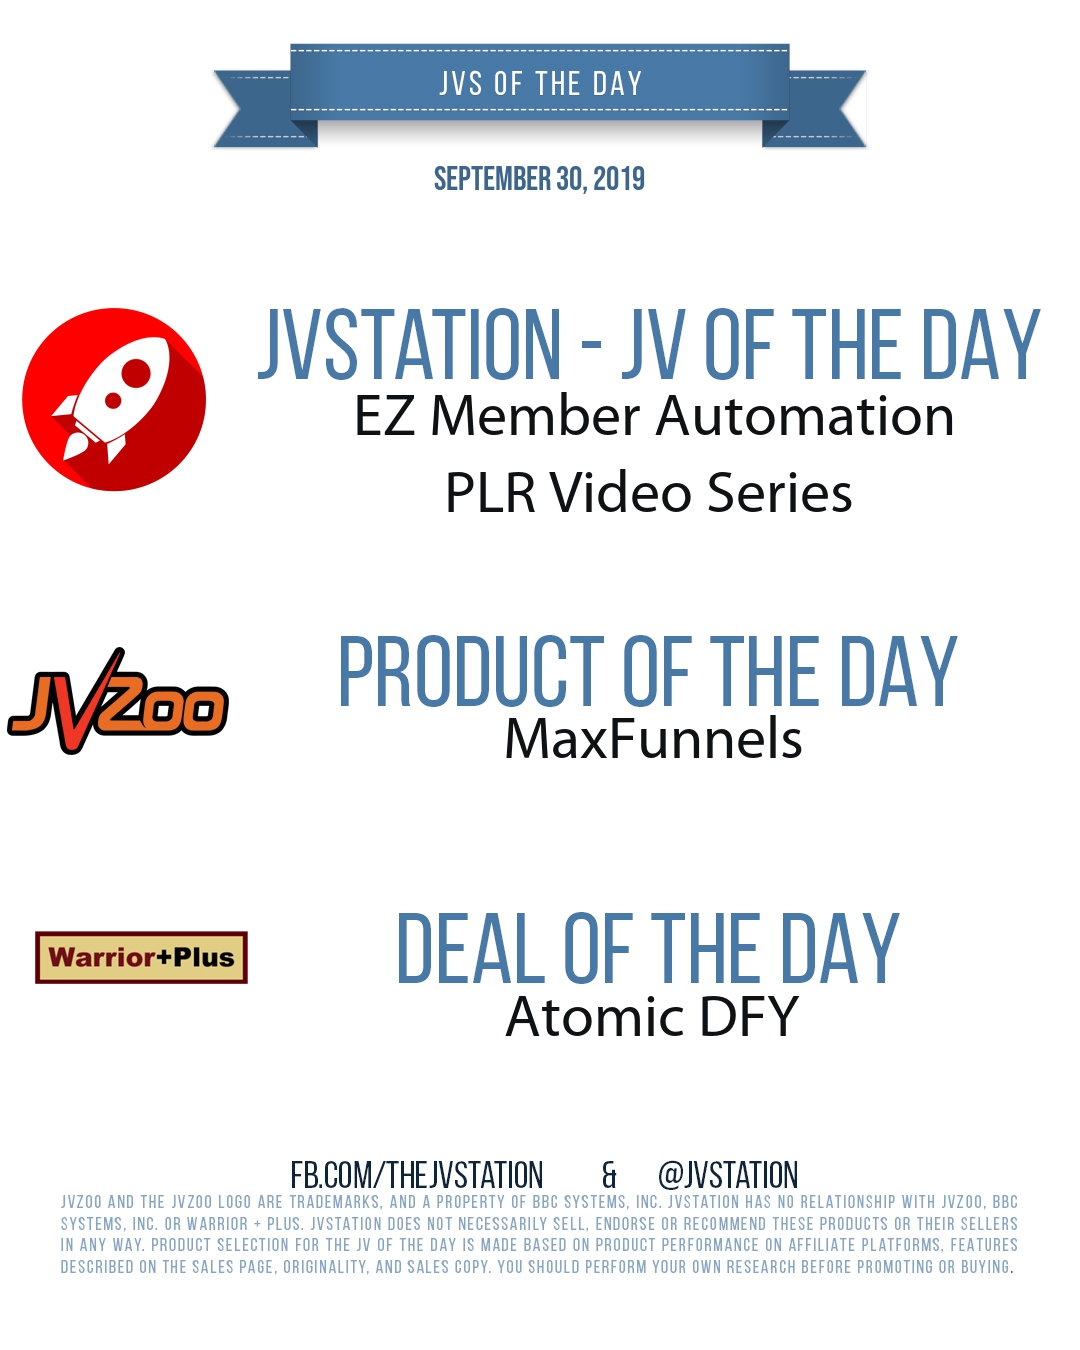 JVs of the day - September 30, 2019